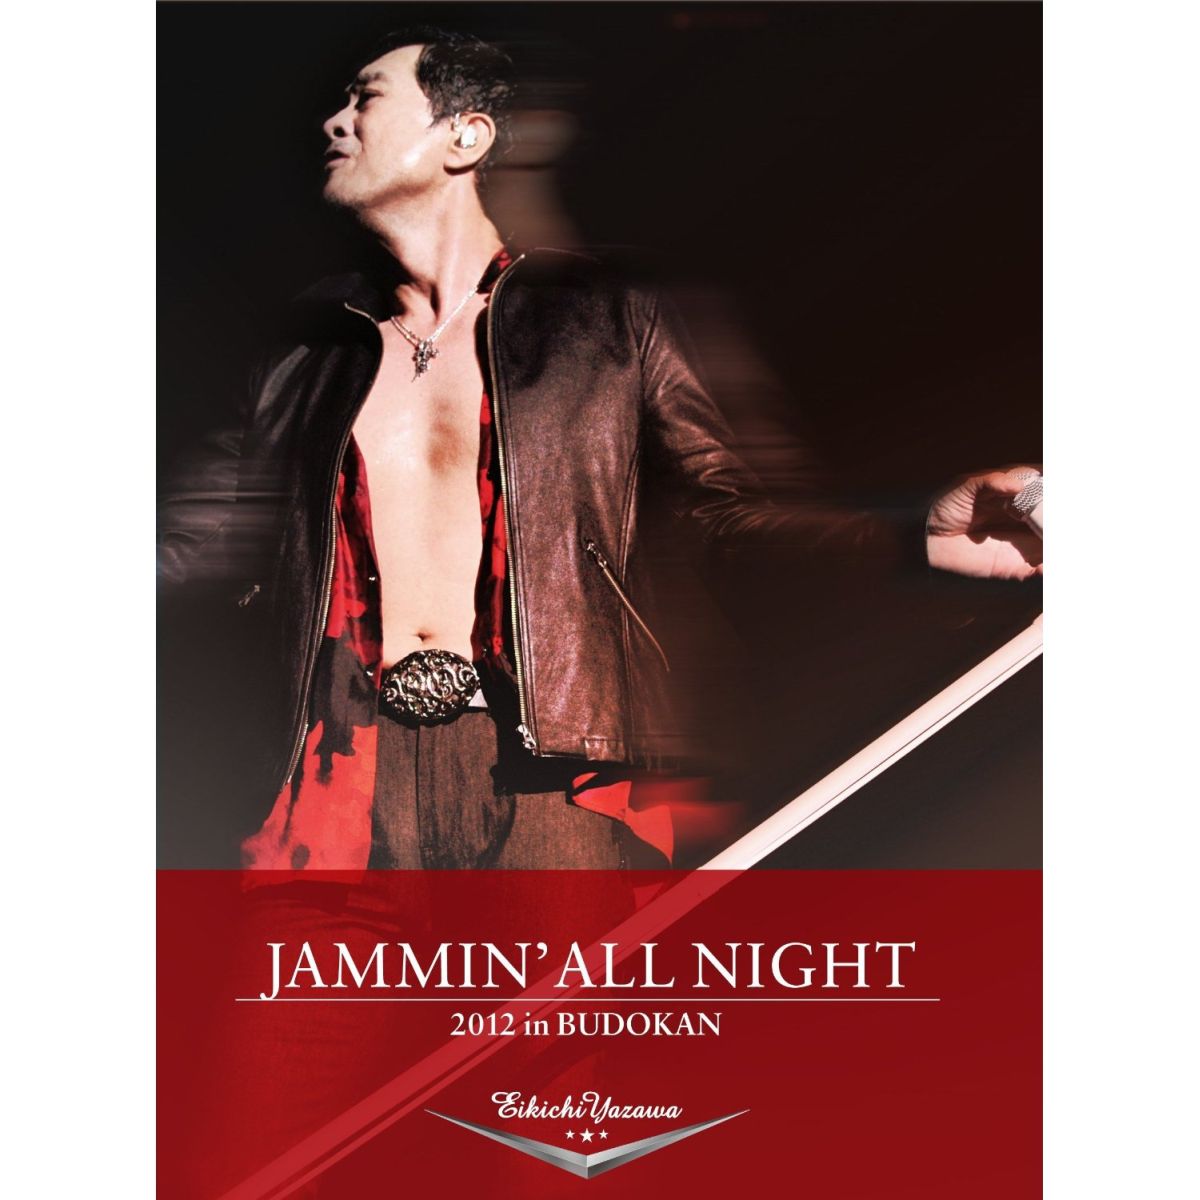 JAMMIN’ ALL NIGHT 2012 in BUDOKAN